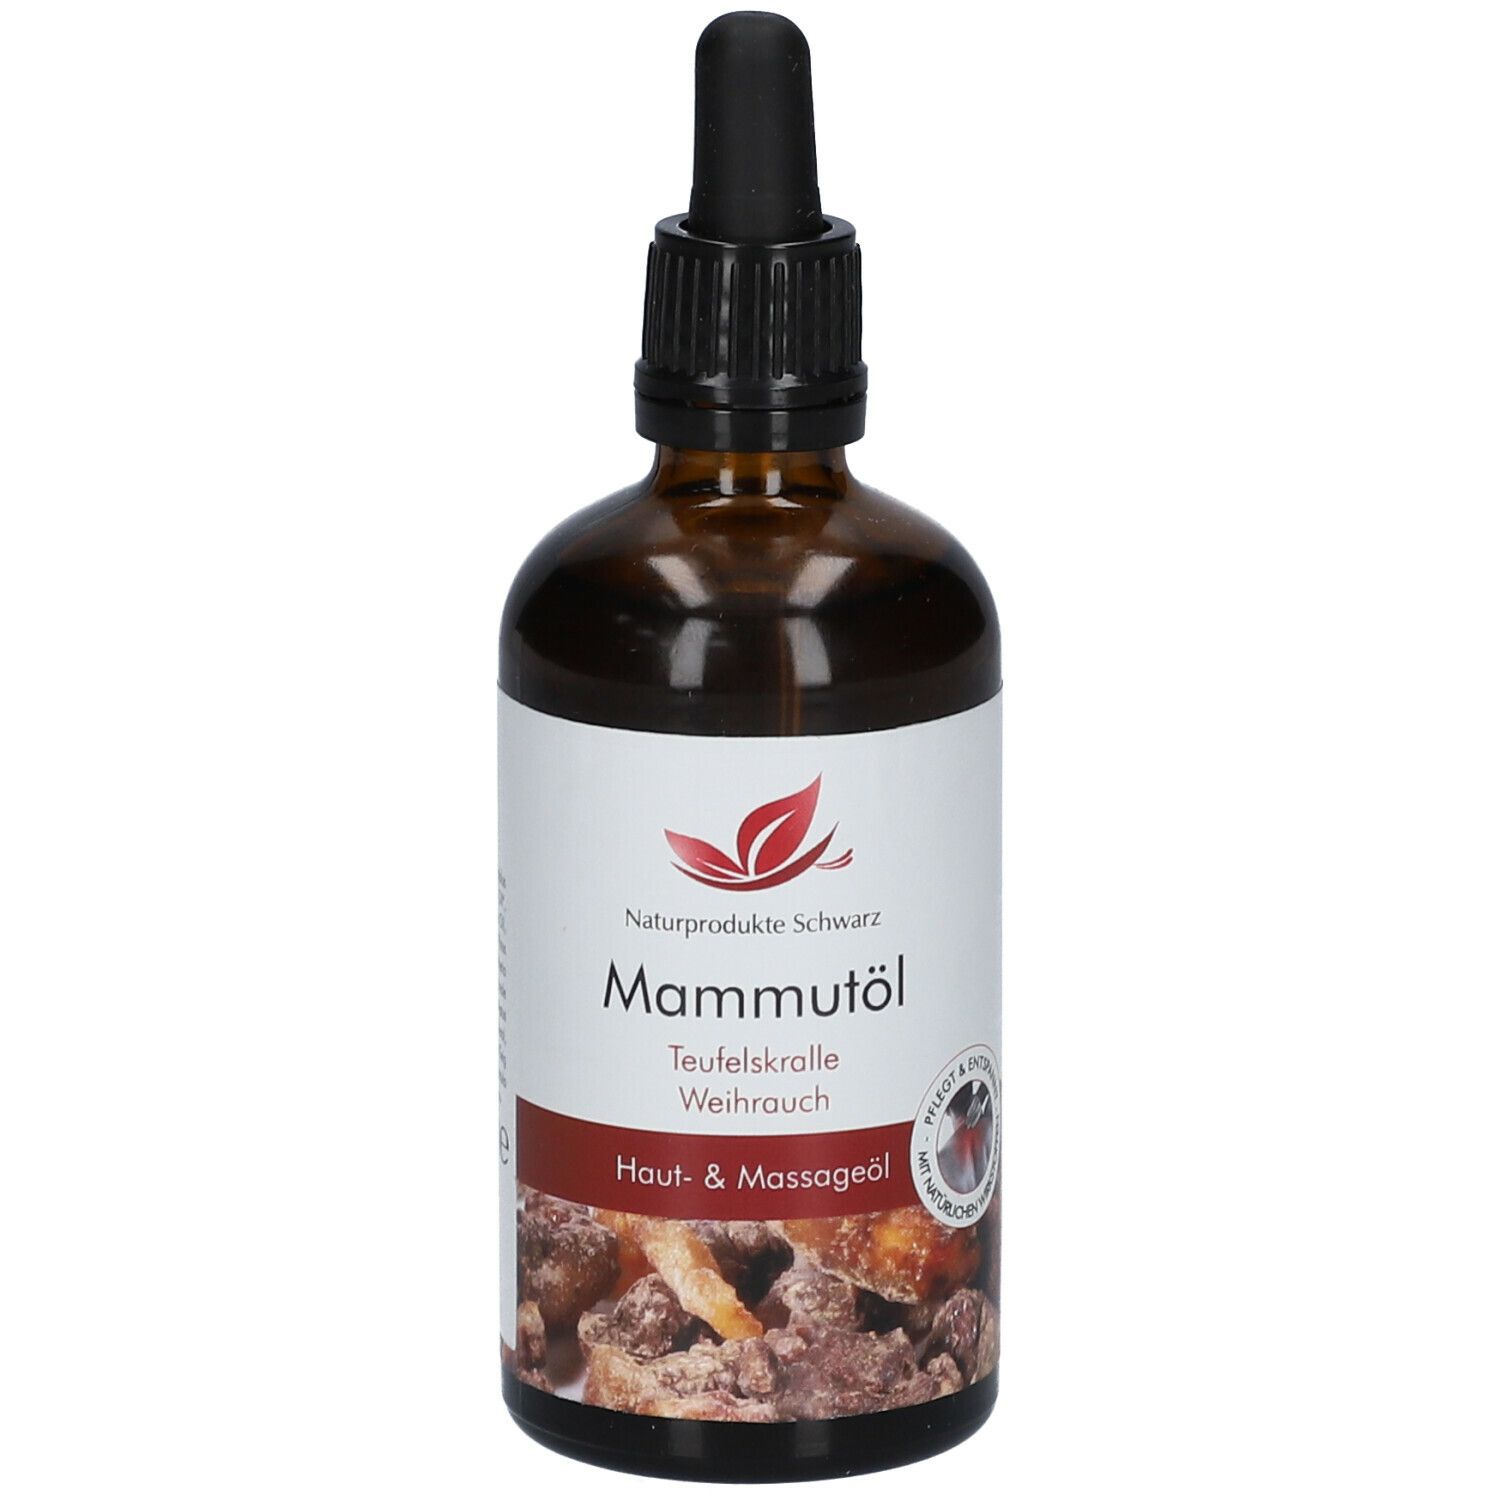 Mammutöl - Massageöl mit Teufelskralle und Weihrauch